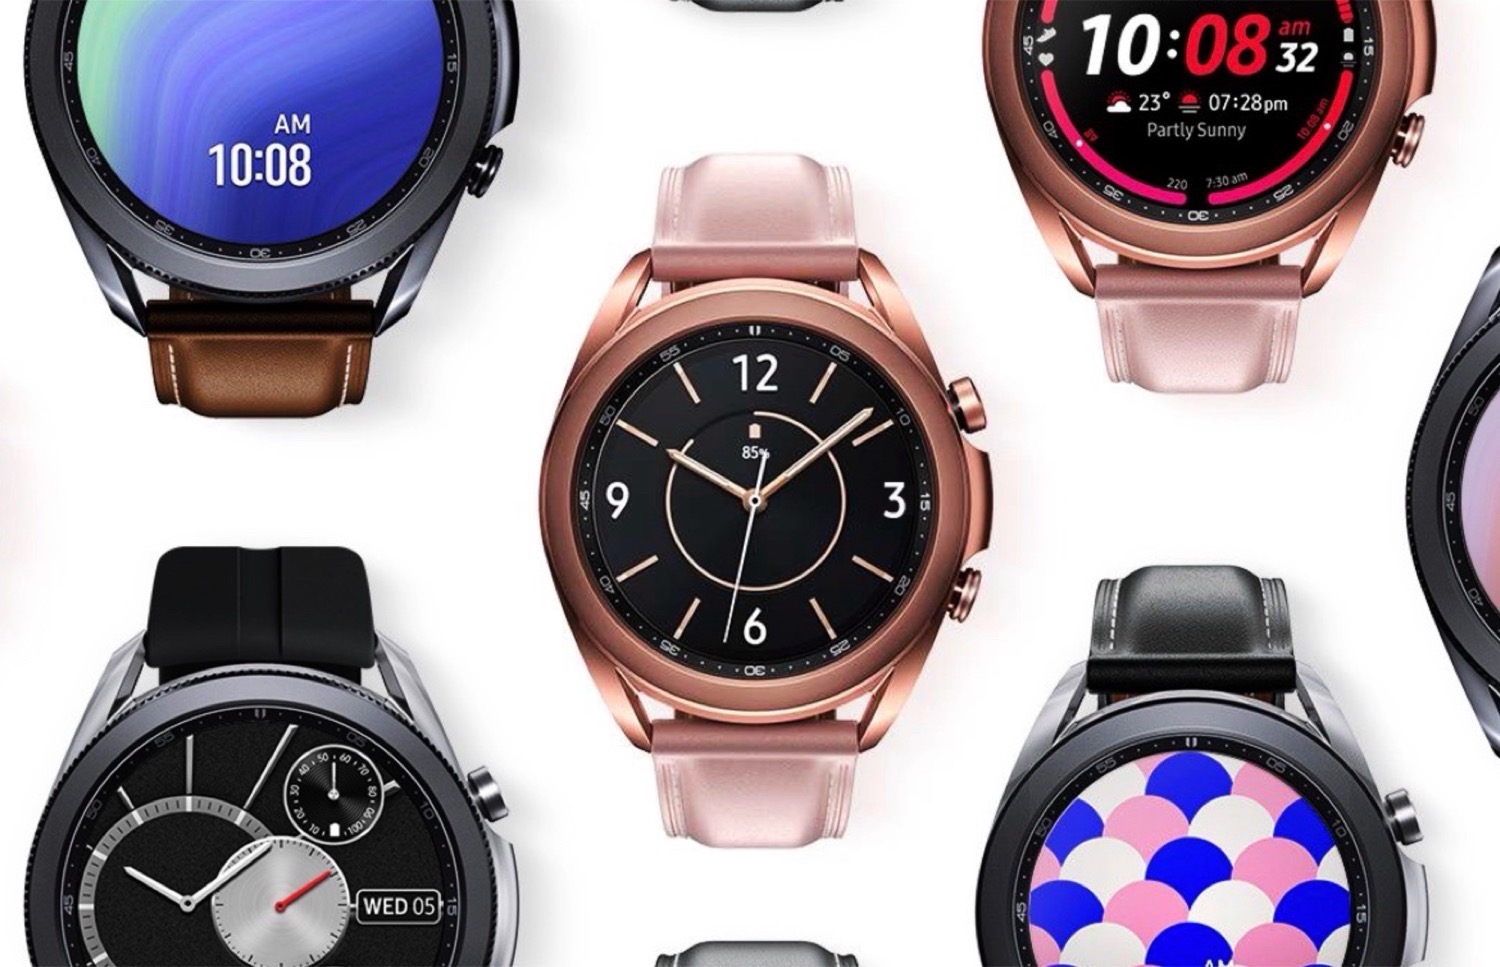 Neue Samsung Galaxy Watch 4 wechselt von Tizen zu Wear OS, misst aber nicht den Blutzucker